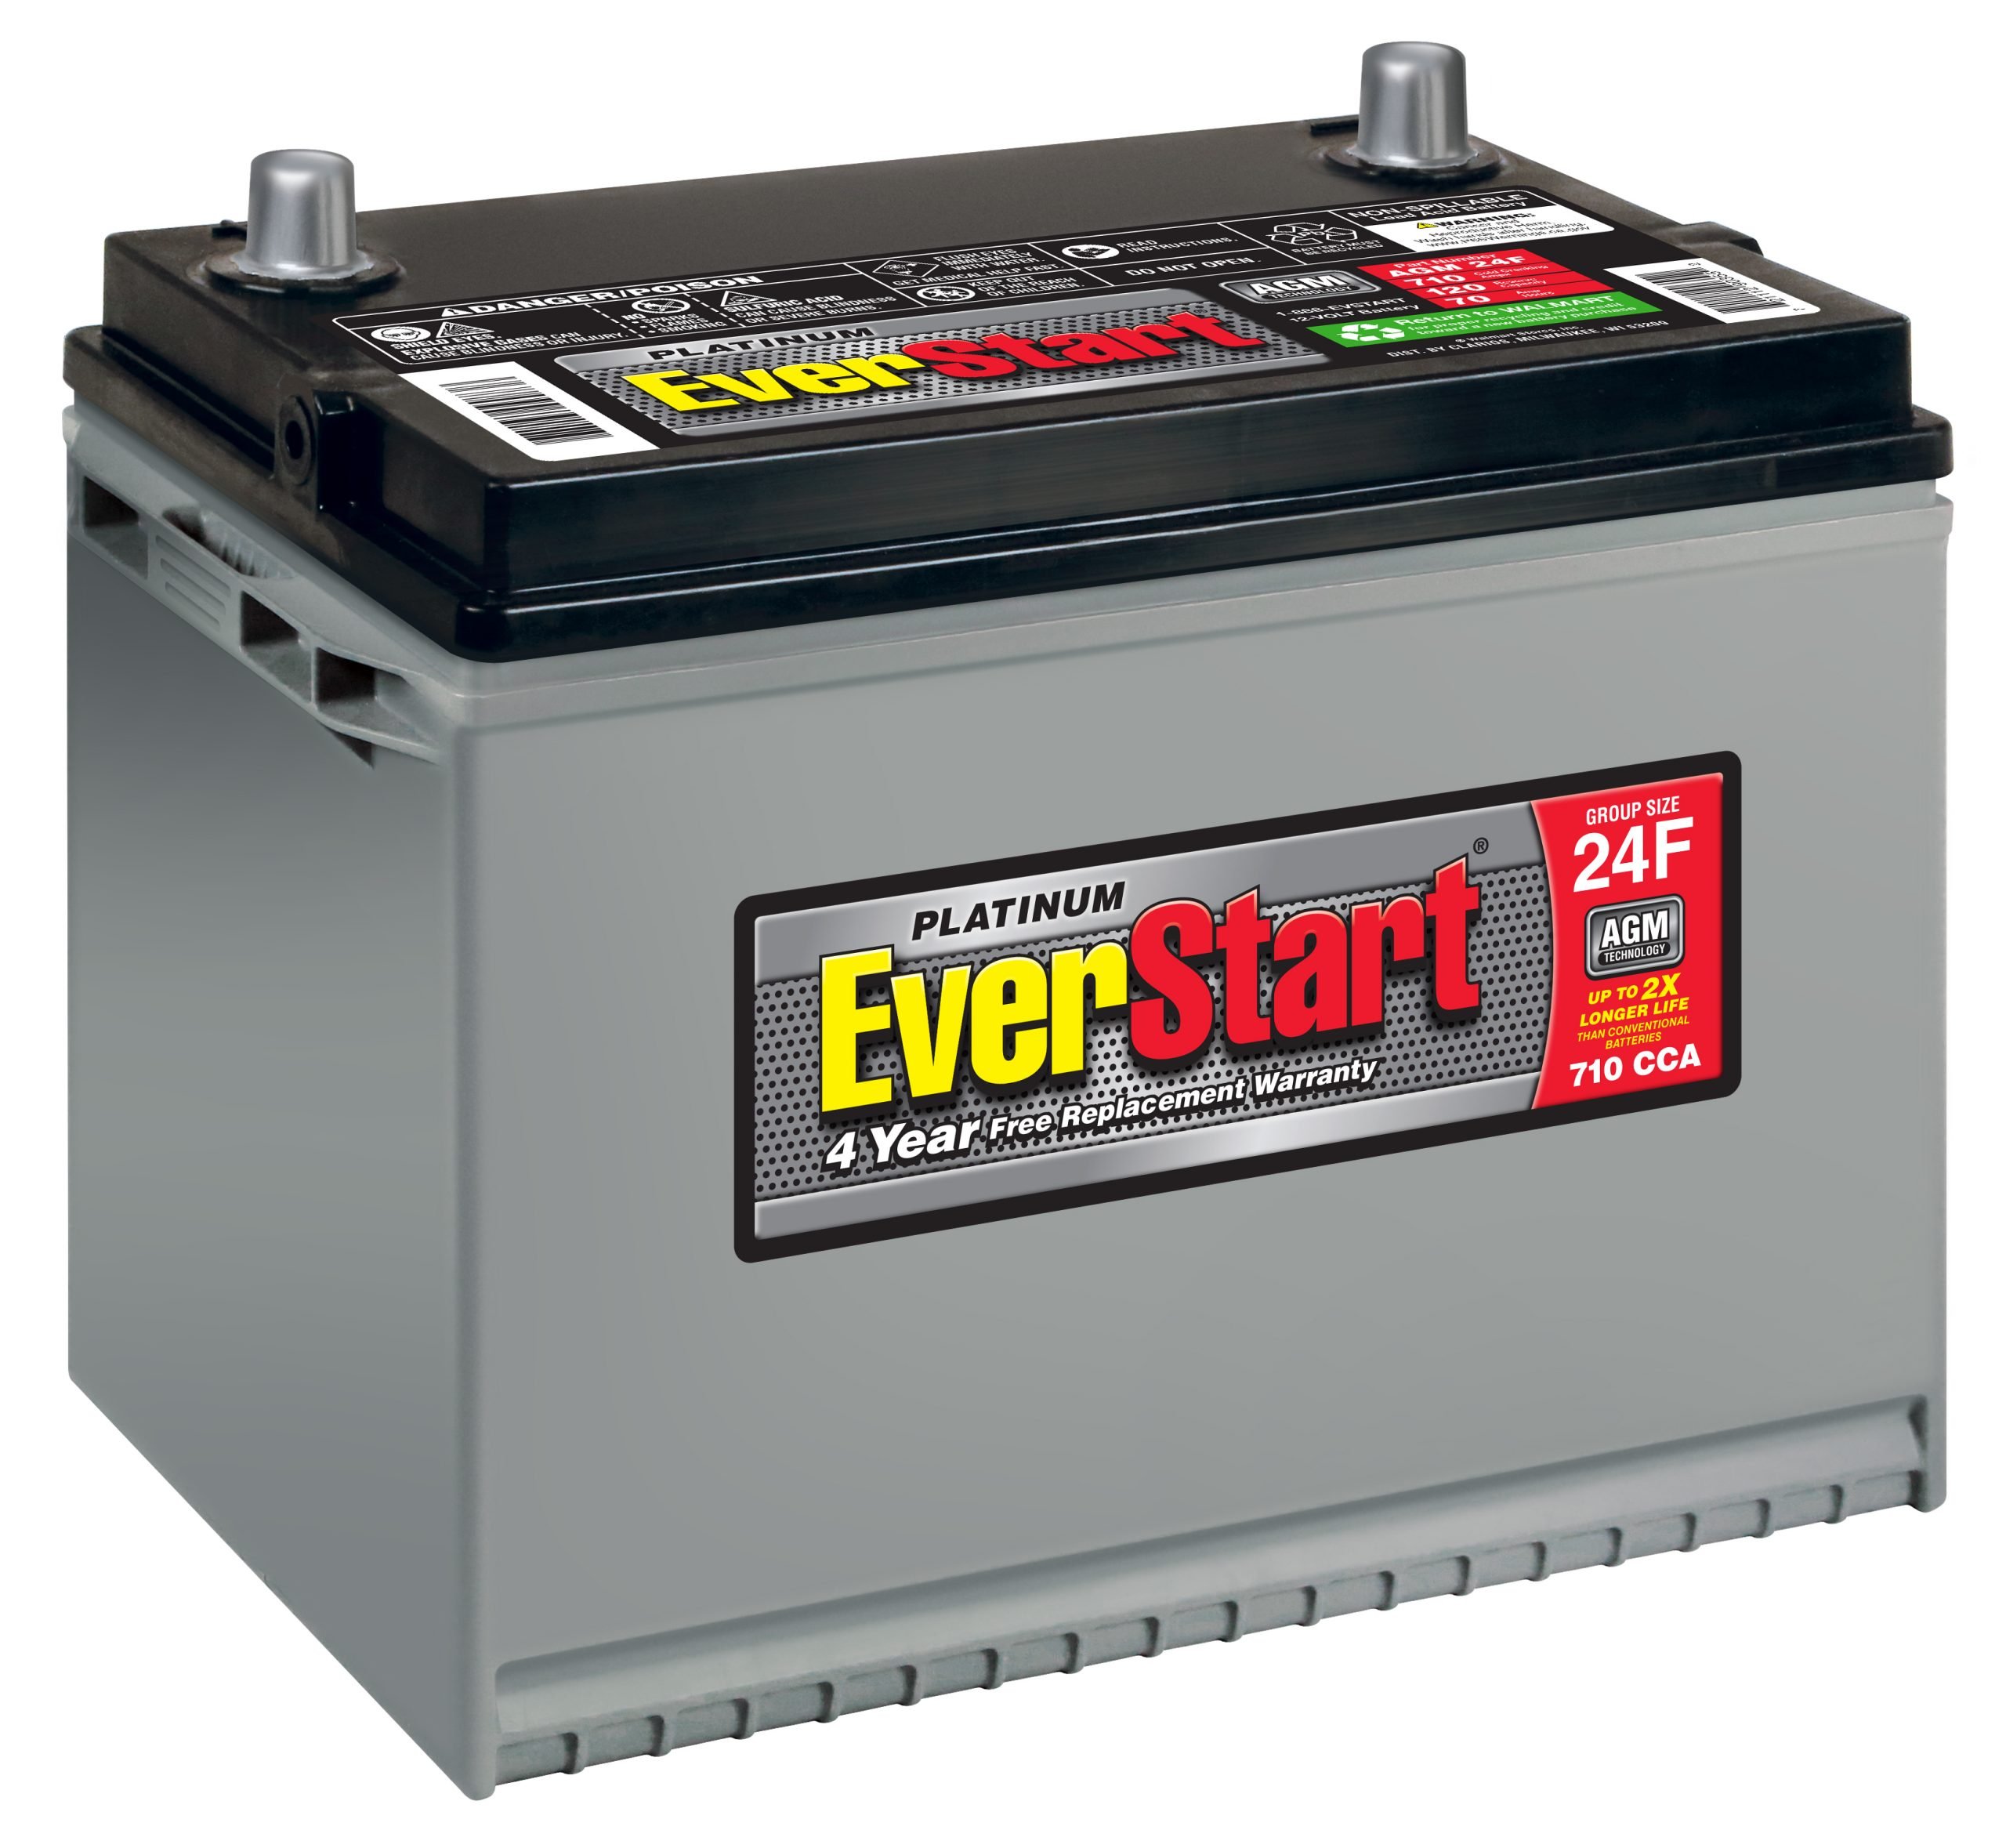 EverStart Platinum AGM Battery, Group 24F  Walmart Inventory Checker ...